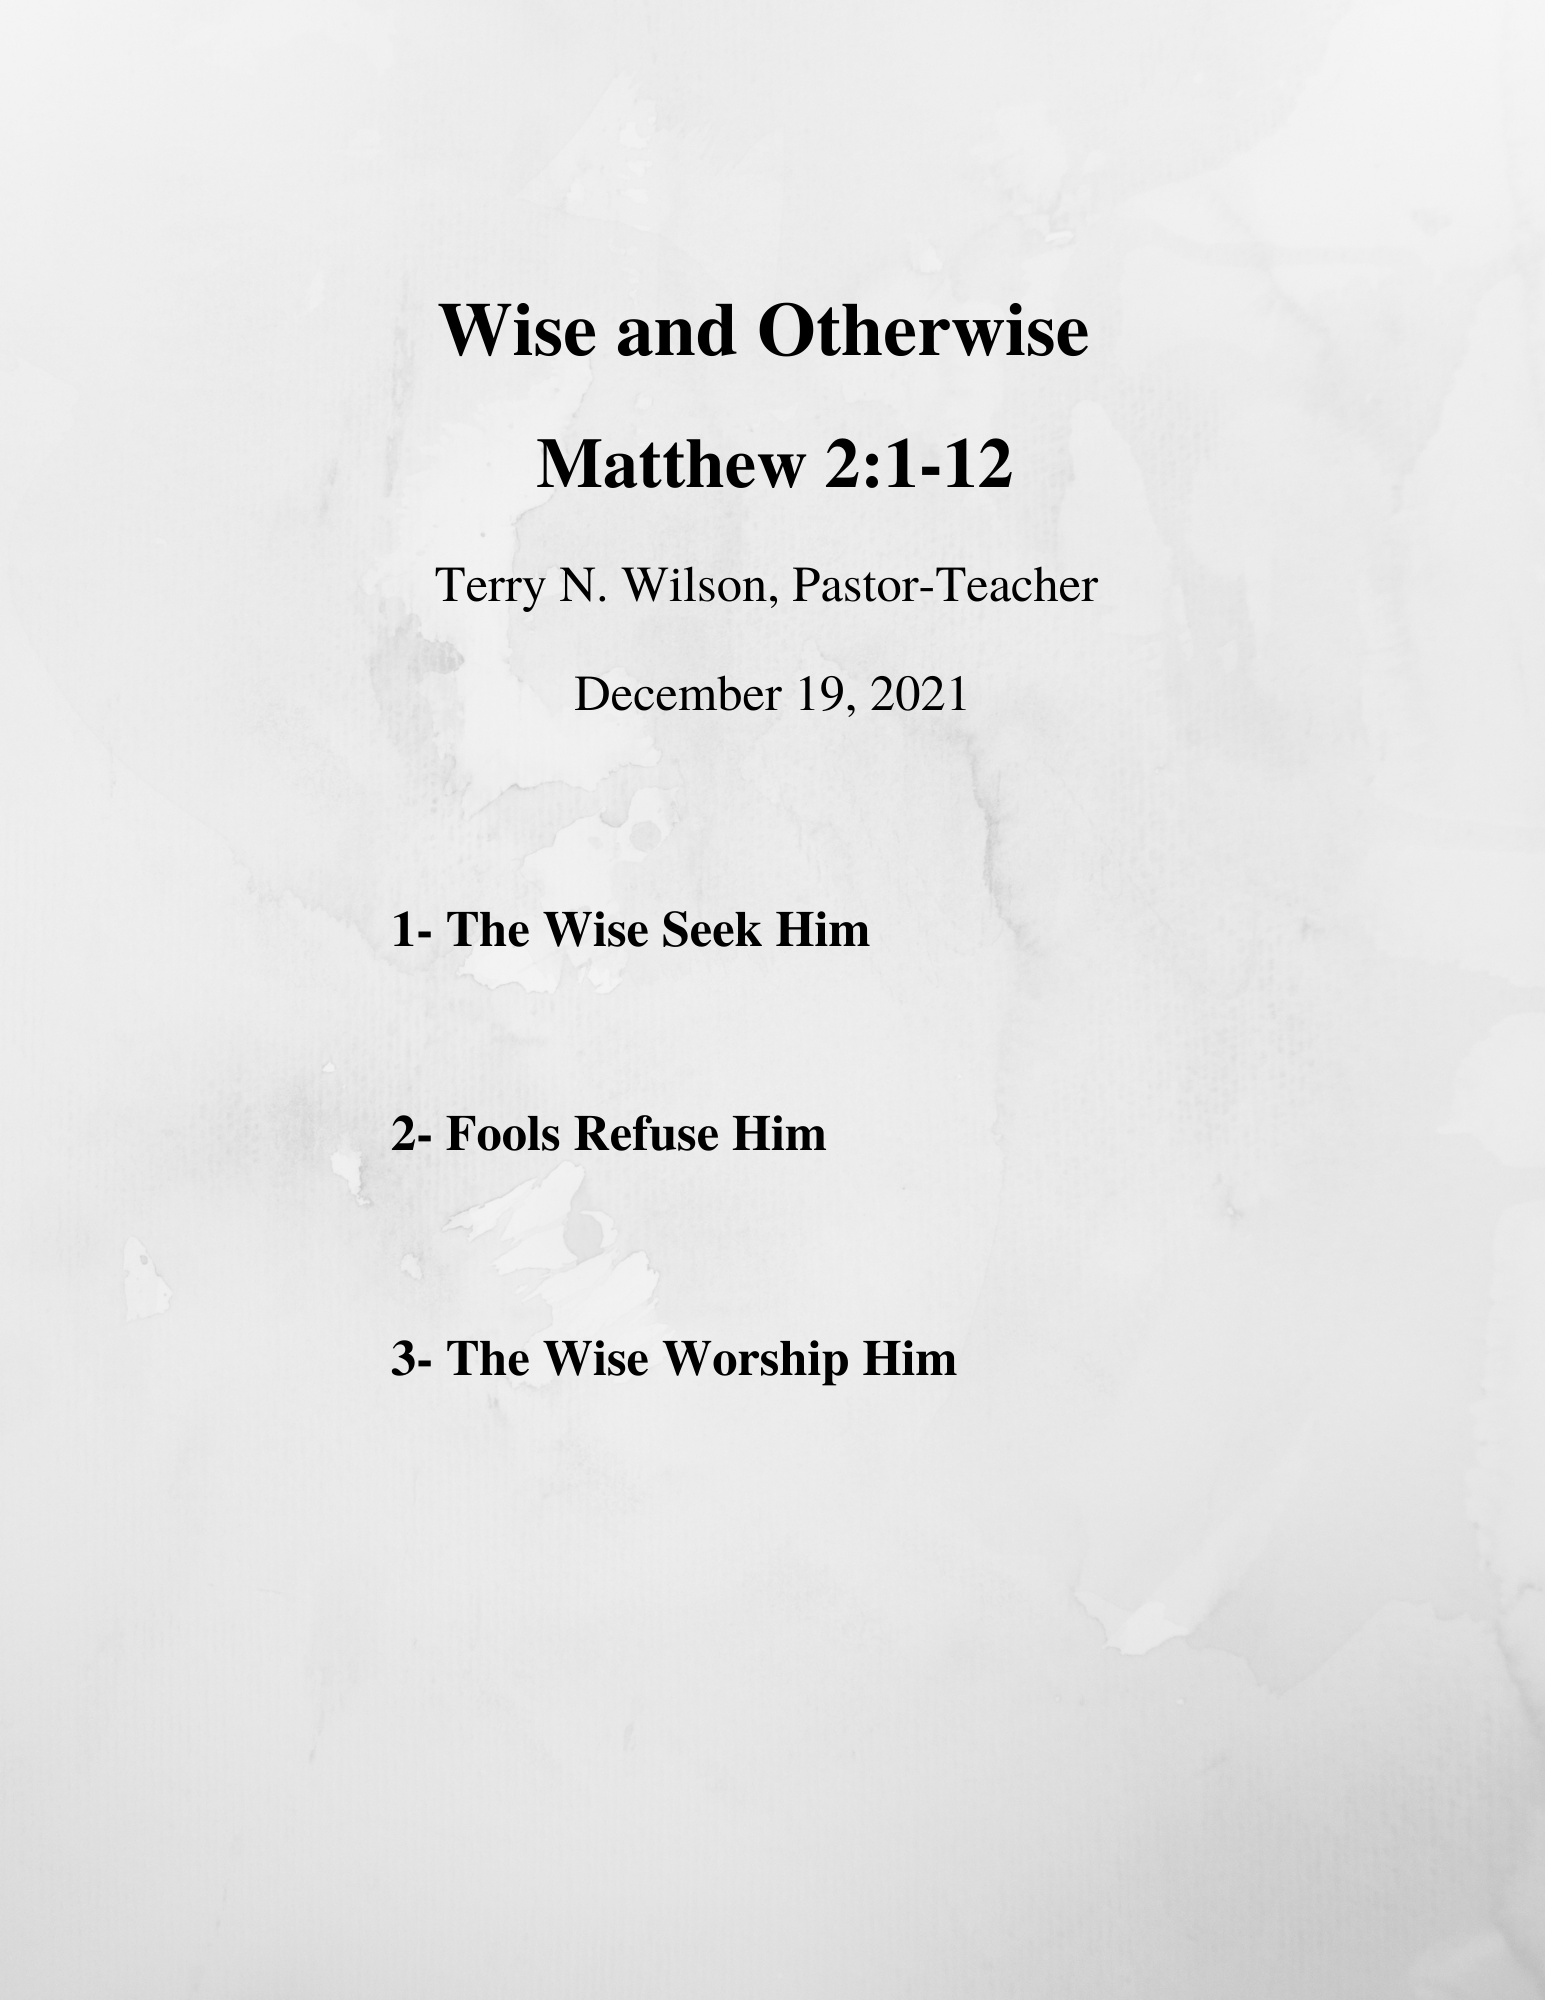 12.19.21 Sermon Notes